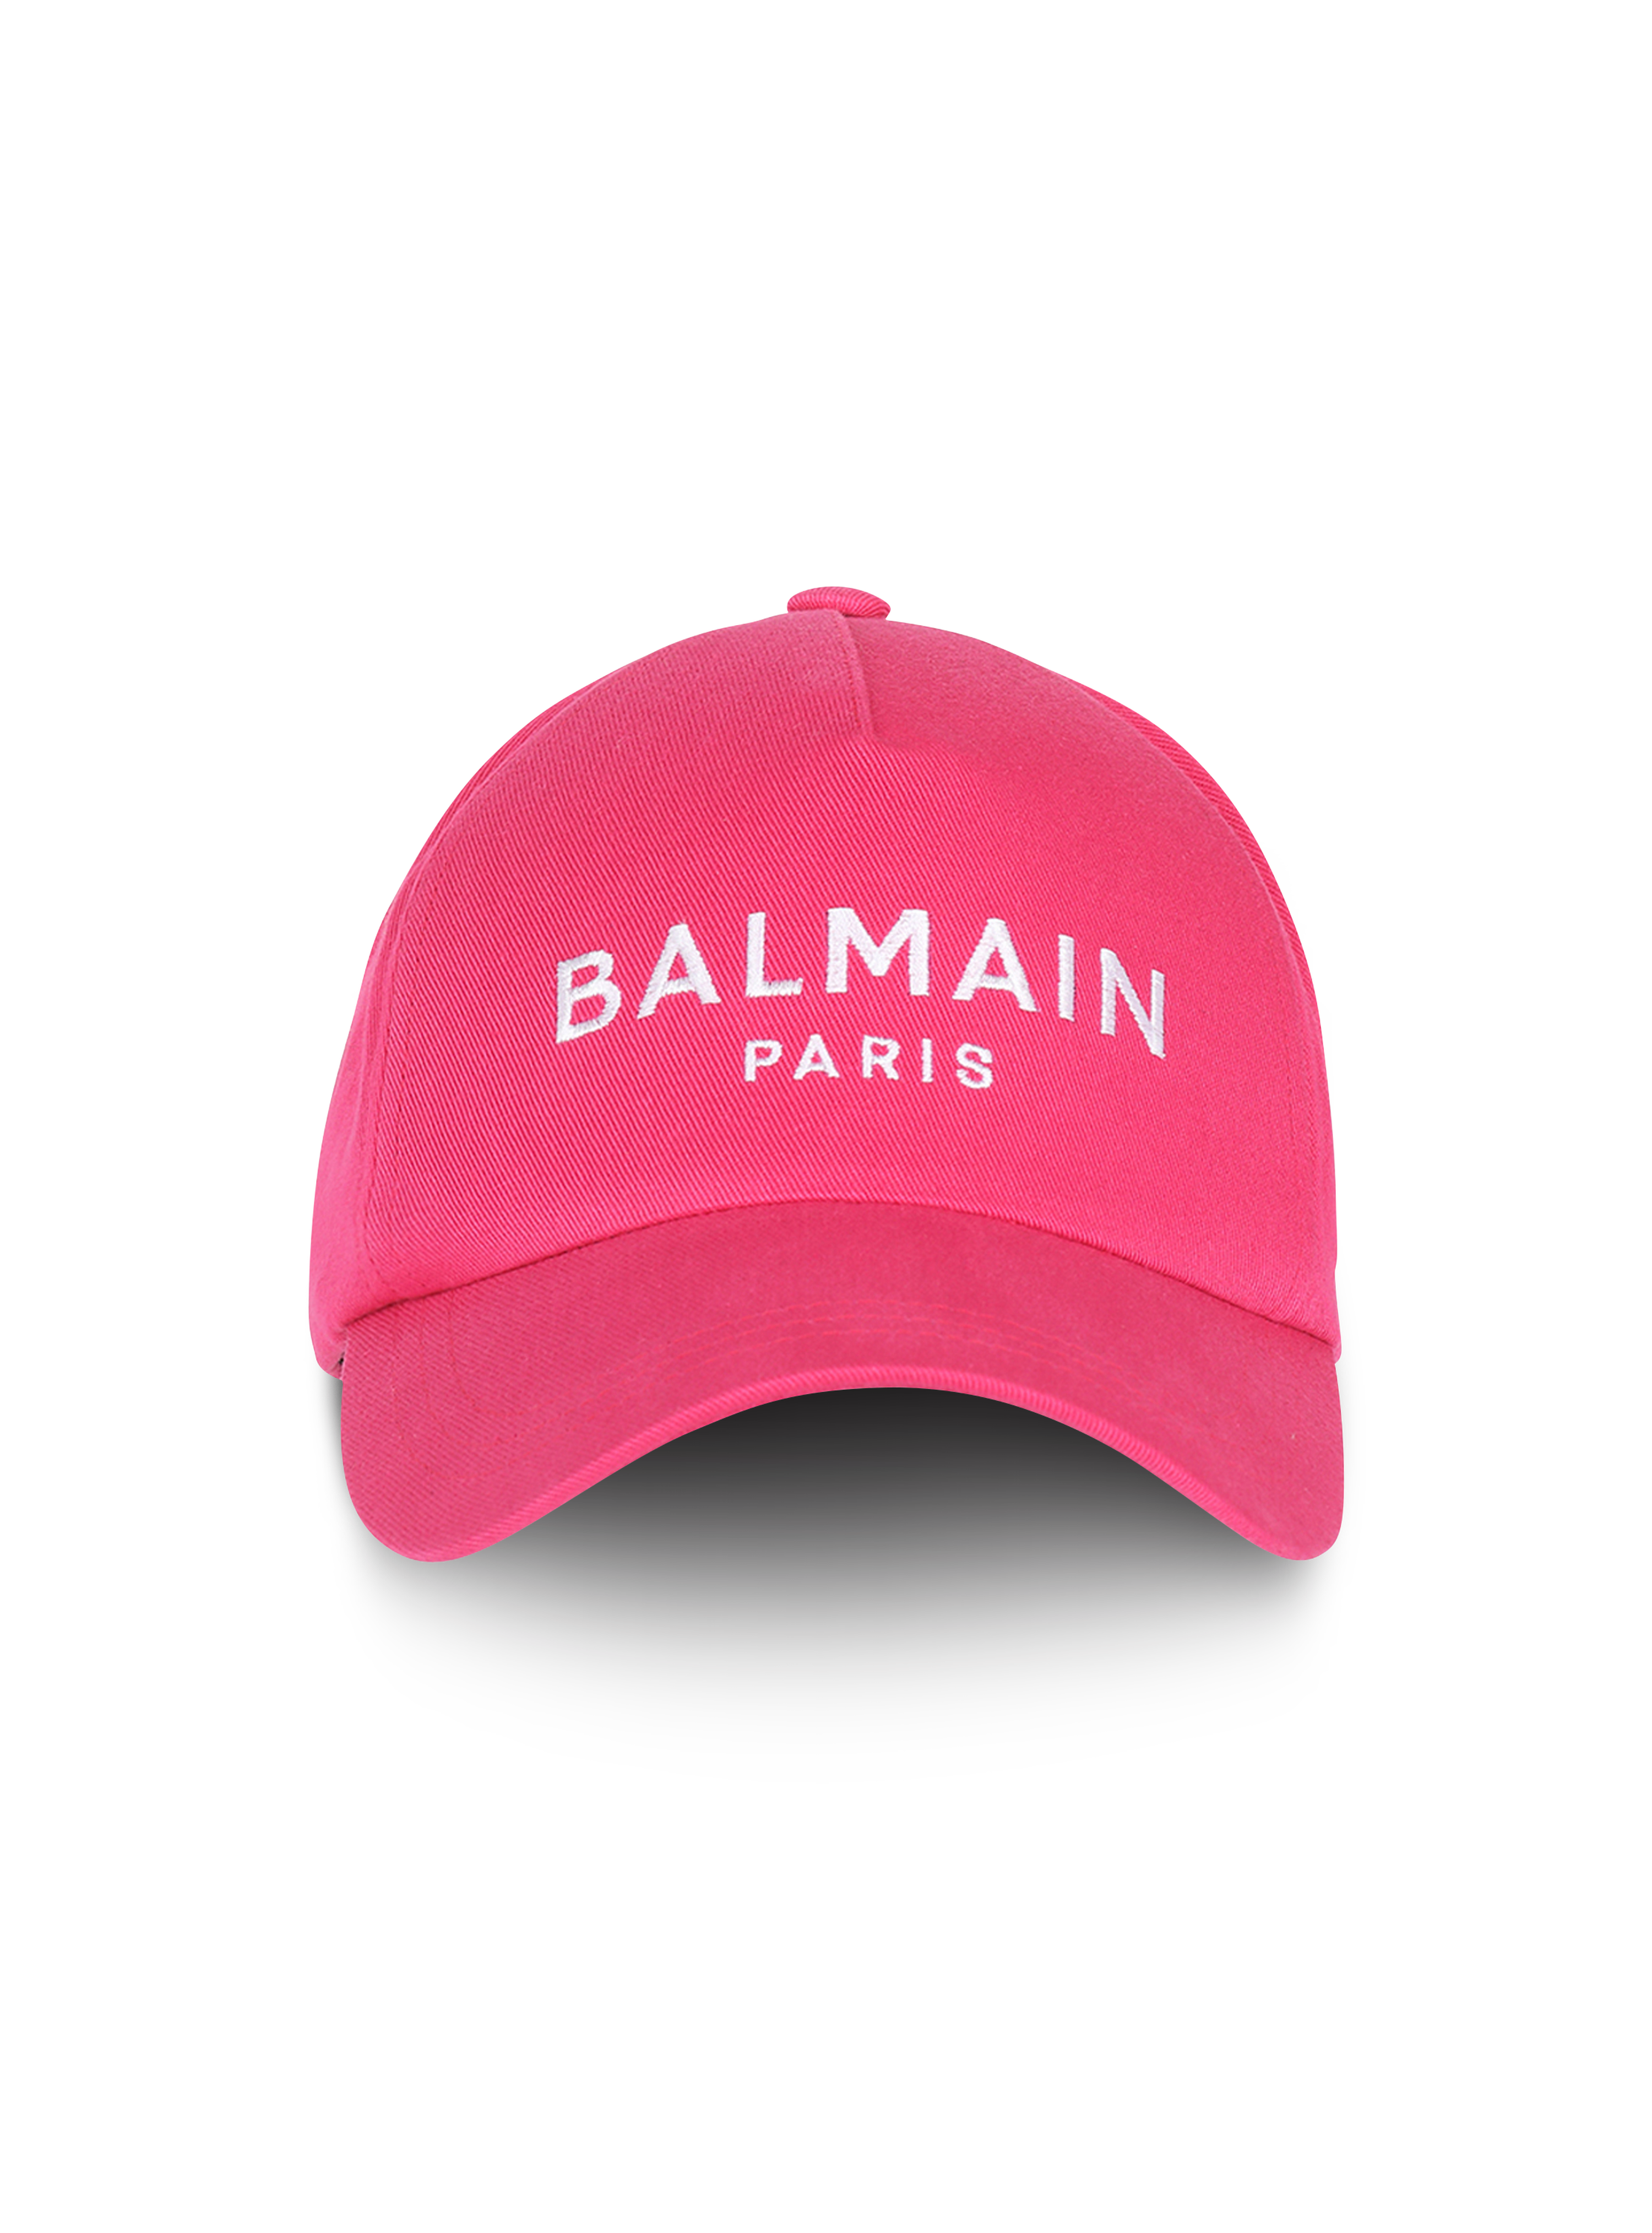 Cotton cap with Balmain logo, pink, hi-res